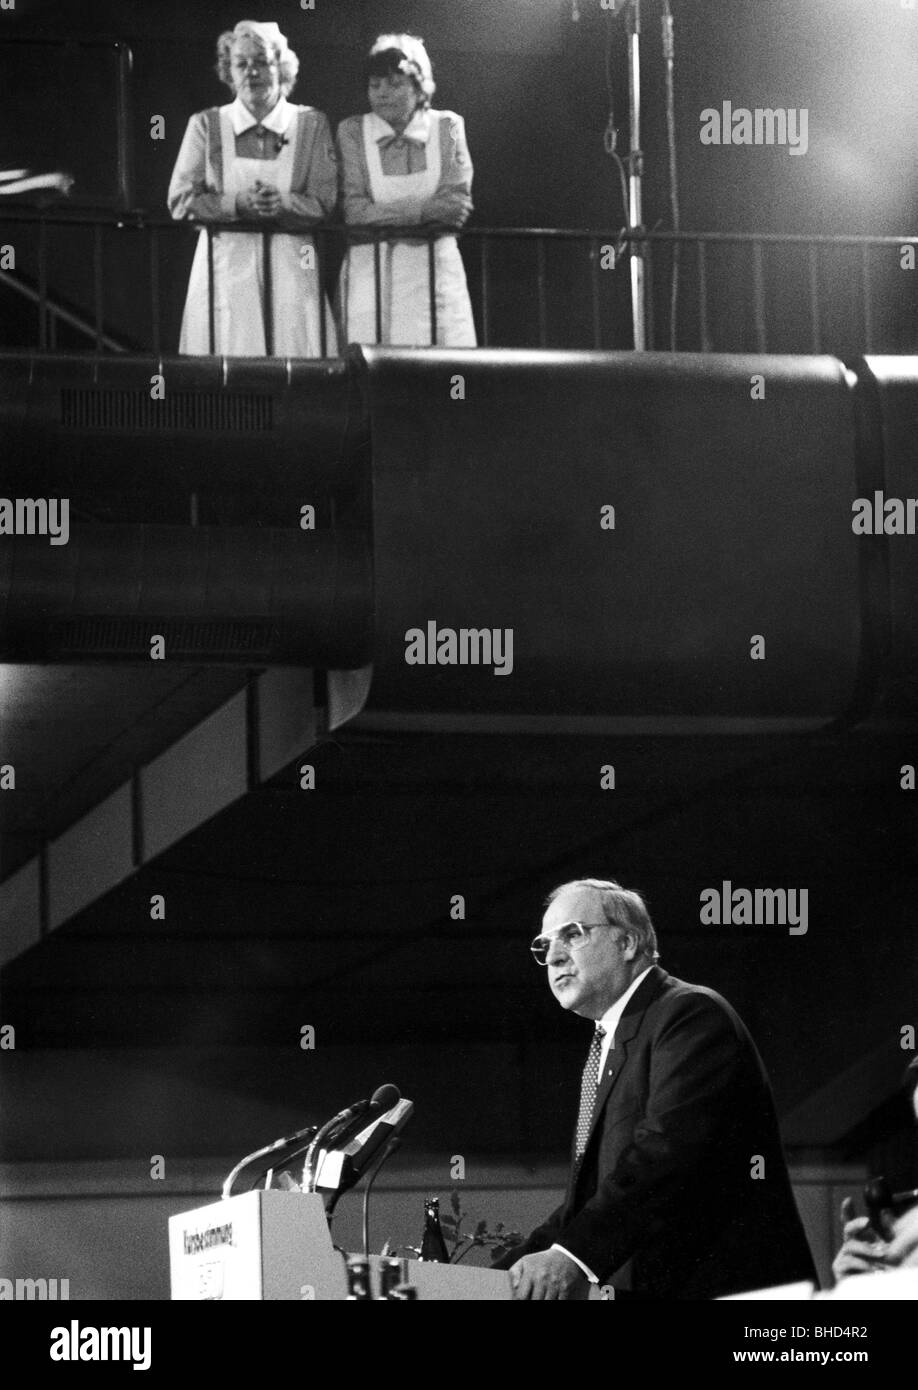 Kohl, Helmut, * 3.4.1930, deutscher Politiker (CDU), Bundeskanzler 4.10.1982 - 26.10.1998, Rede auf der CSU-Party-Kundgebung München, 19.- 20.10.1984, Stockfoto